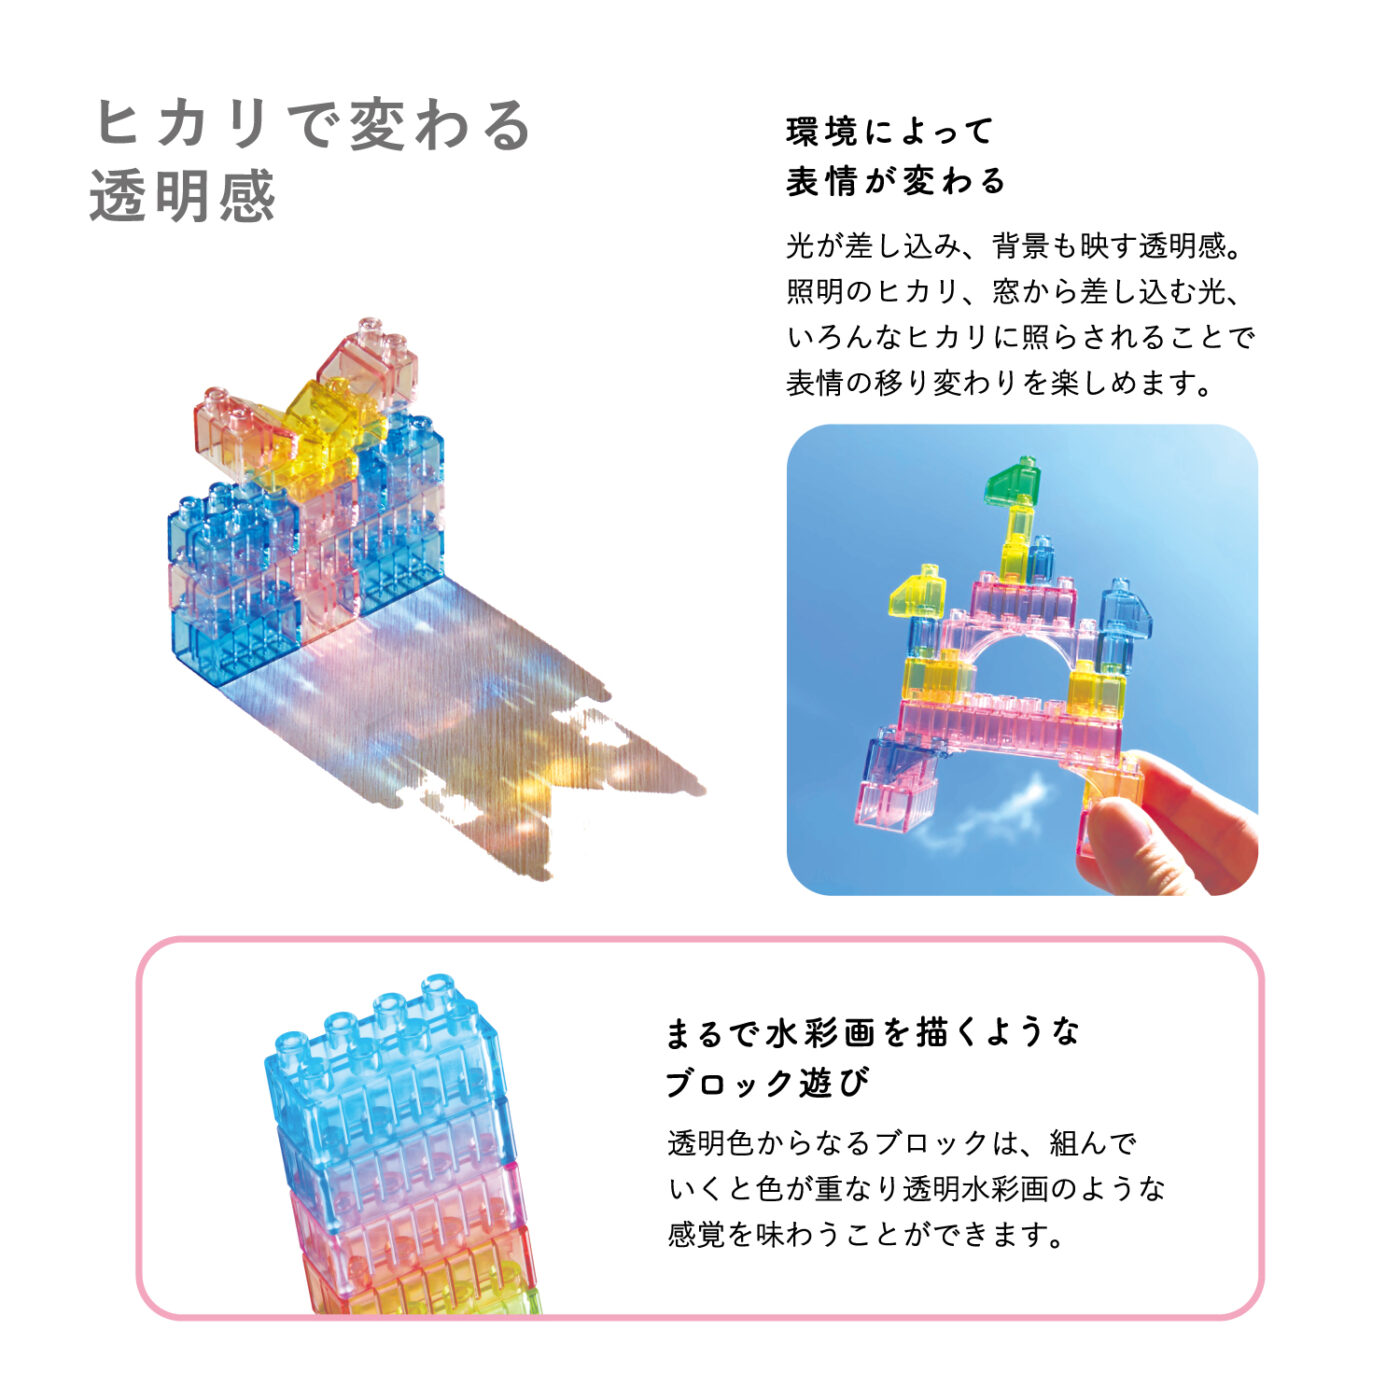 ダイヤブロック HIKARIIRO(ヒカリイロ) Lの商品画像5